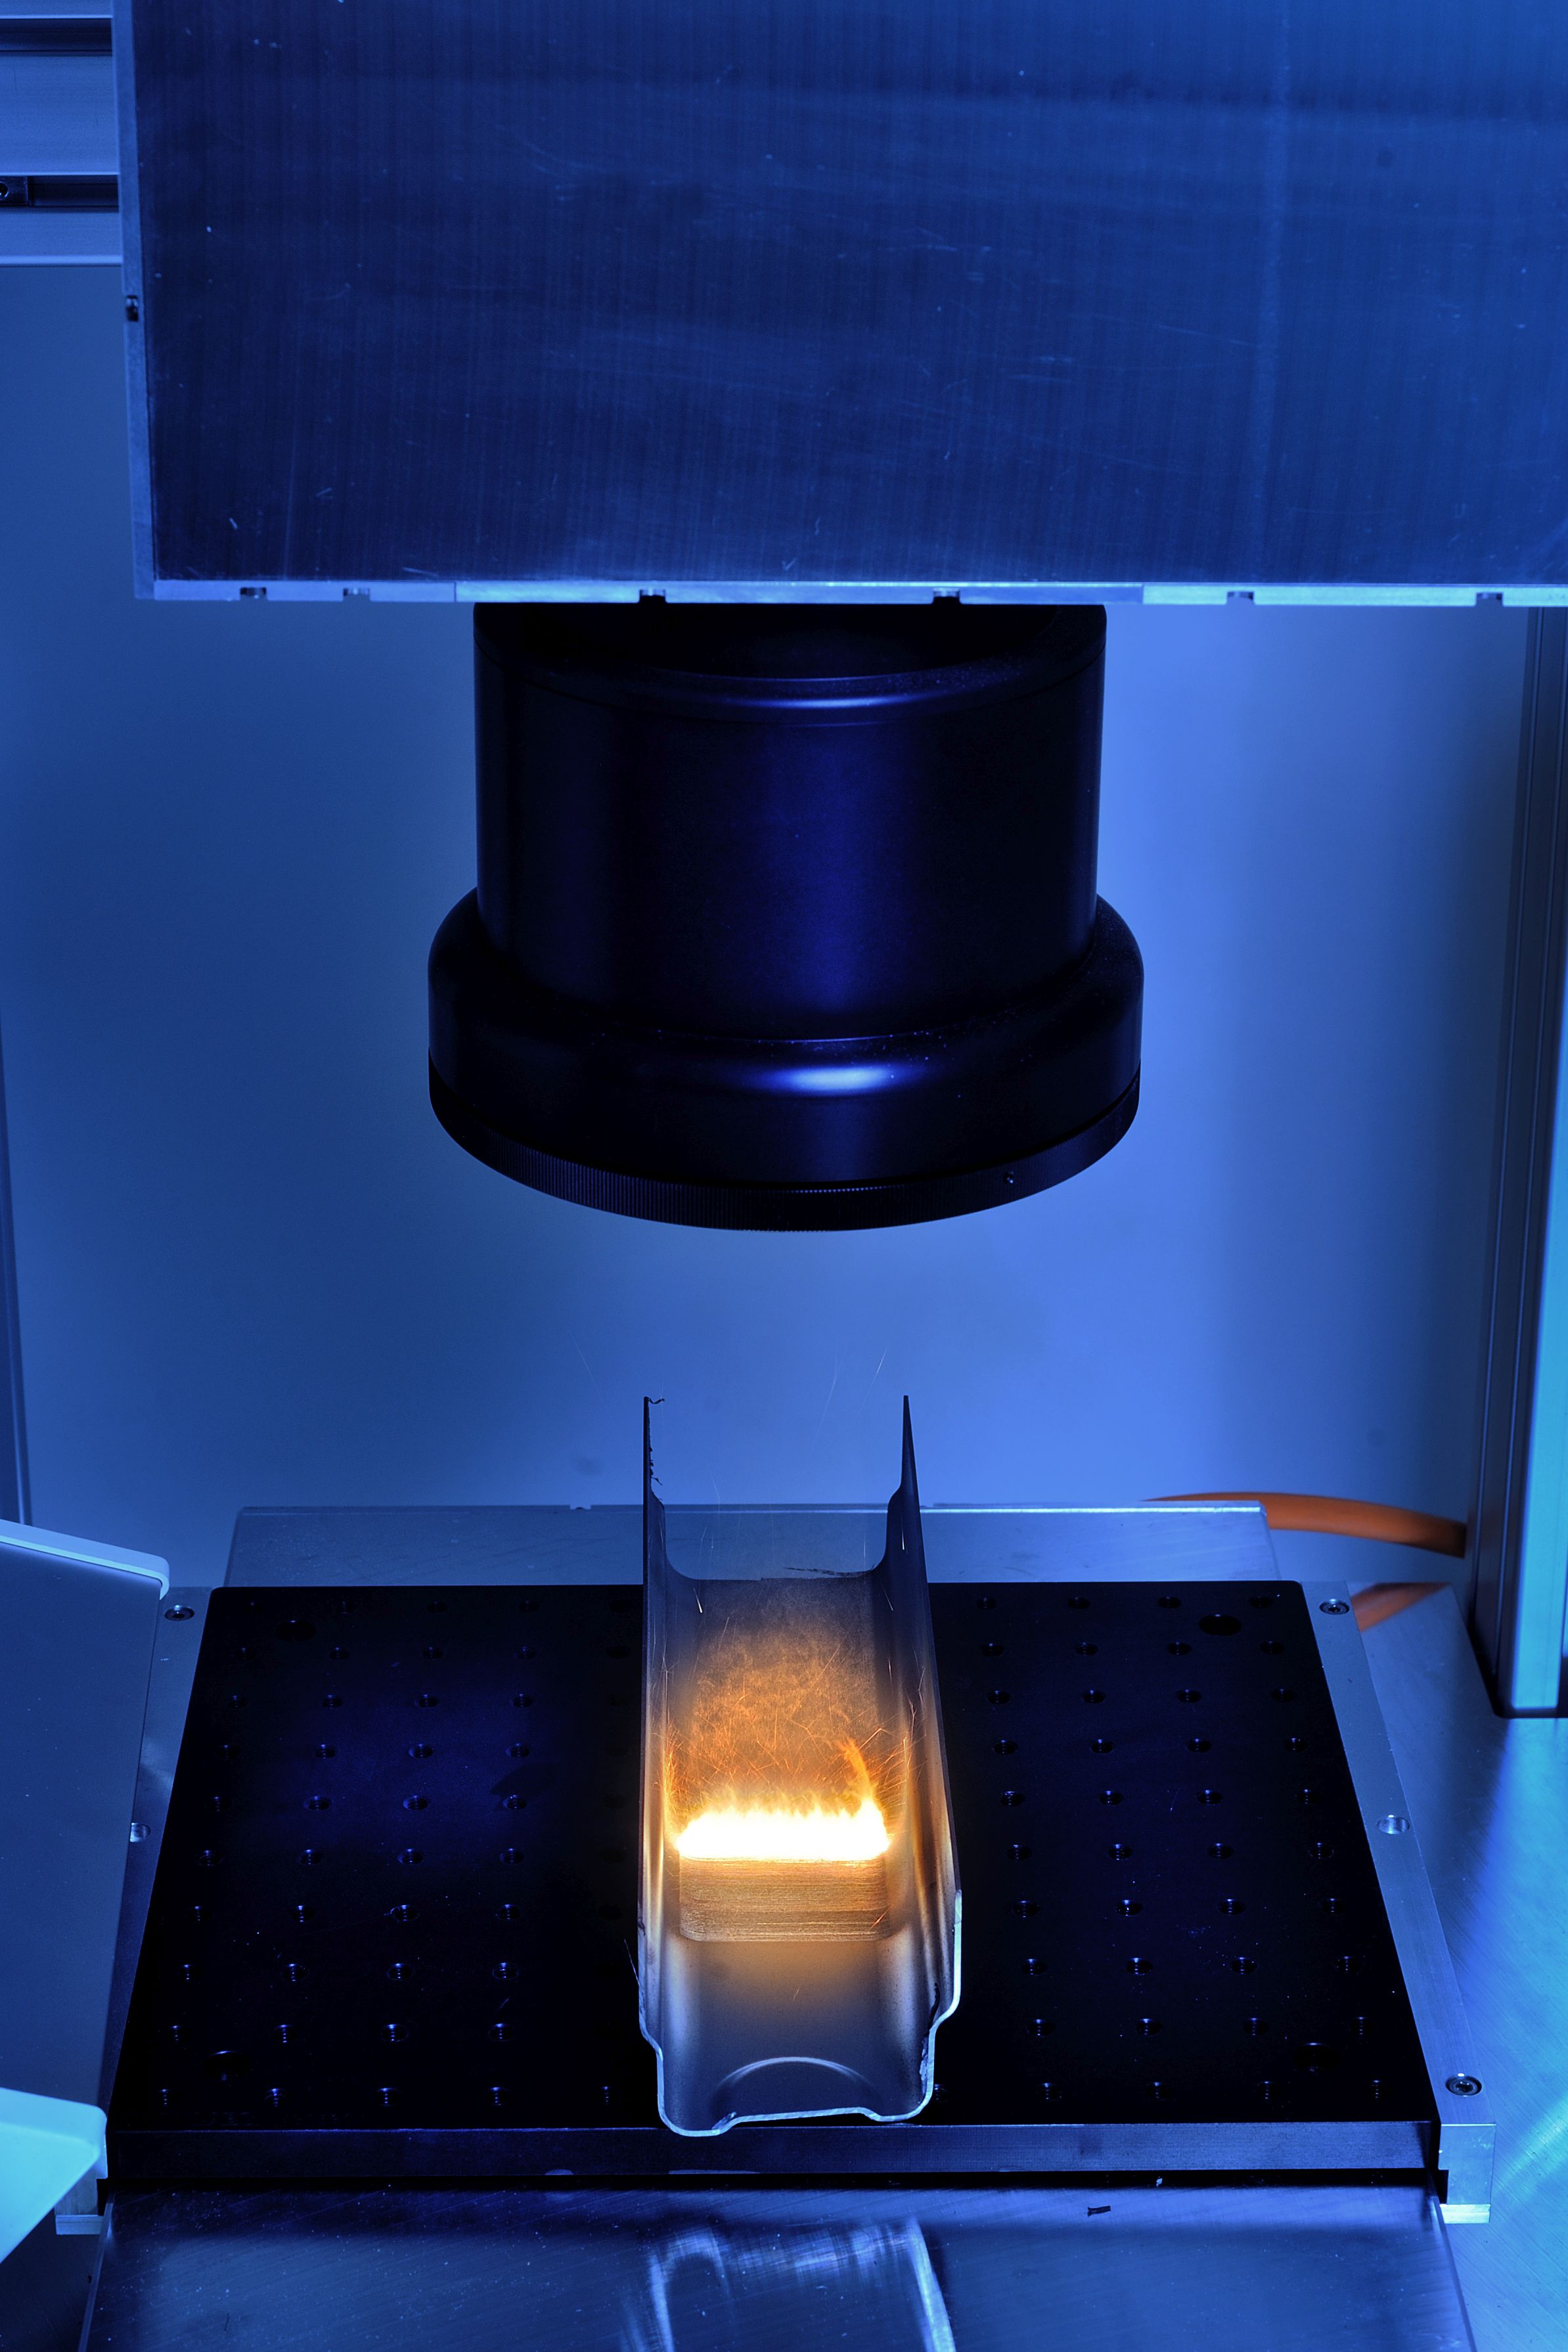 Photo 2: Système pour la texturation laser ultra-rapide pour l’assemblage hybride.